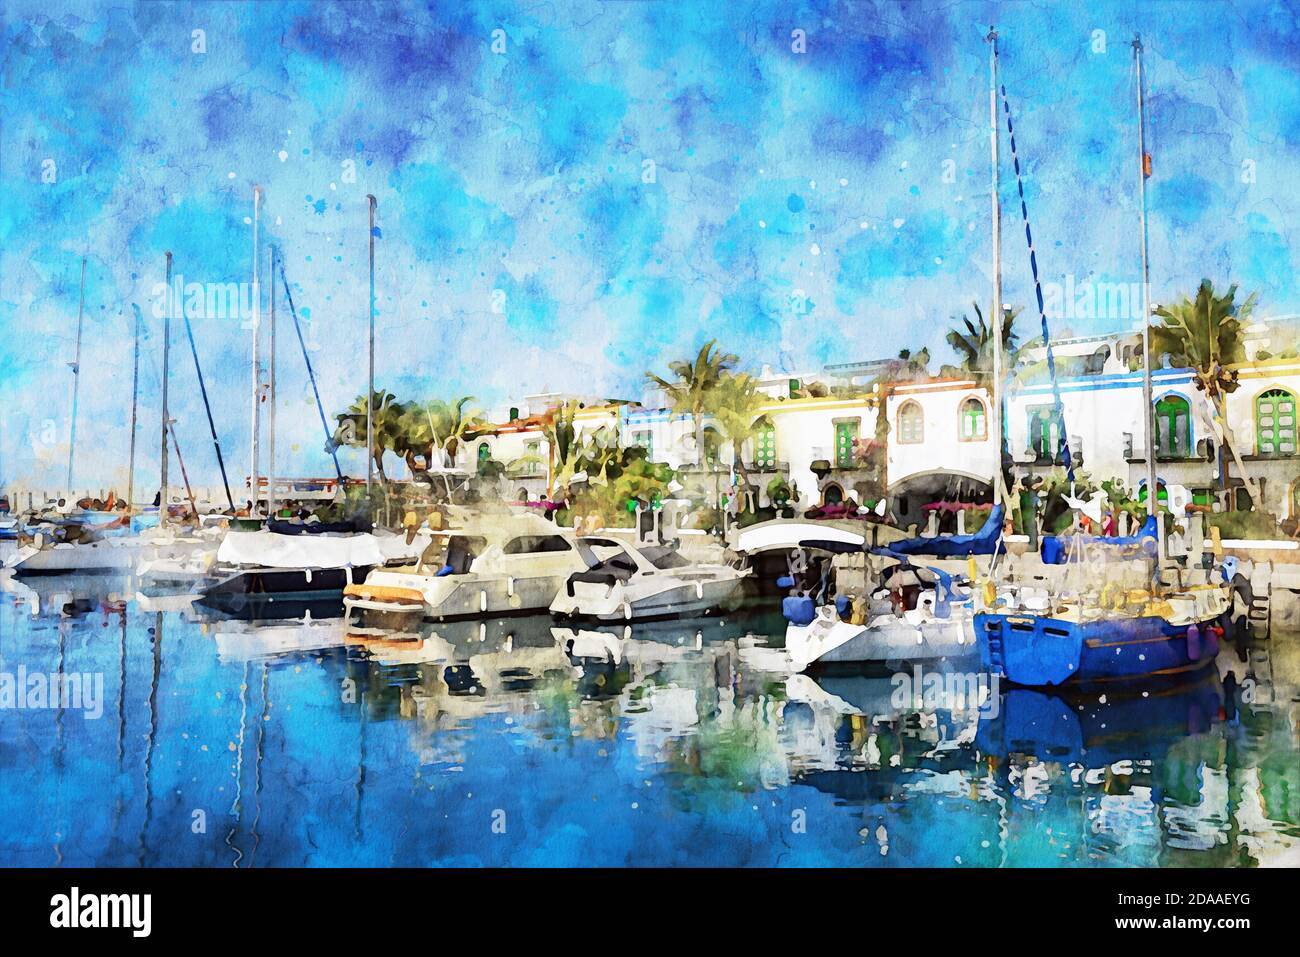 Peinture aquarelle de CityScape de Puerto de Morgan sur l'île de Gran Canaria. Espagne. Bateaux dans le port. Banque D'Images